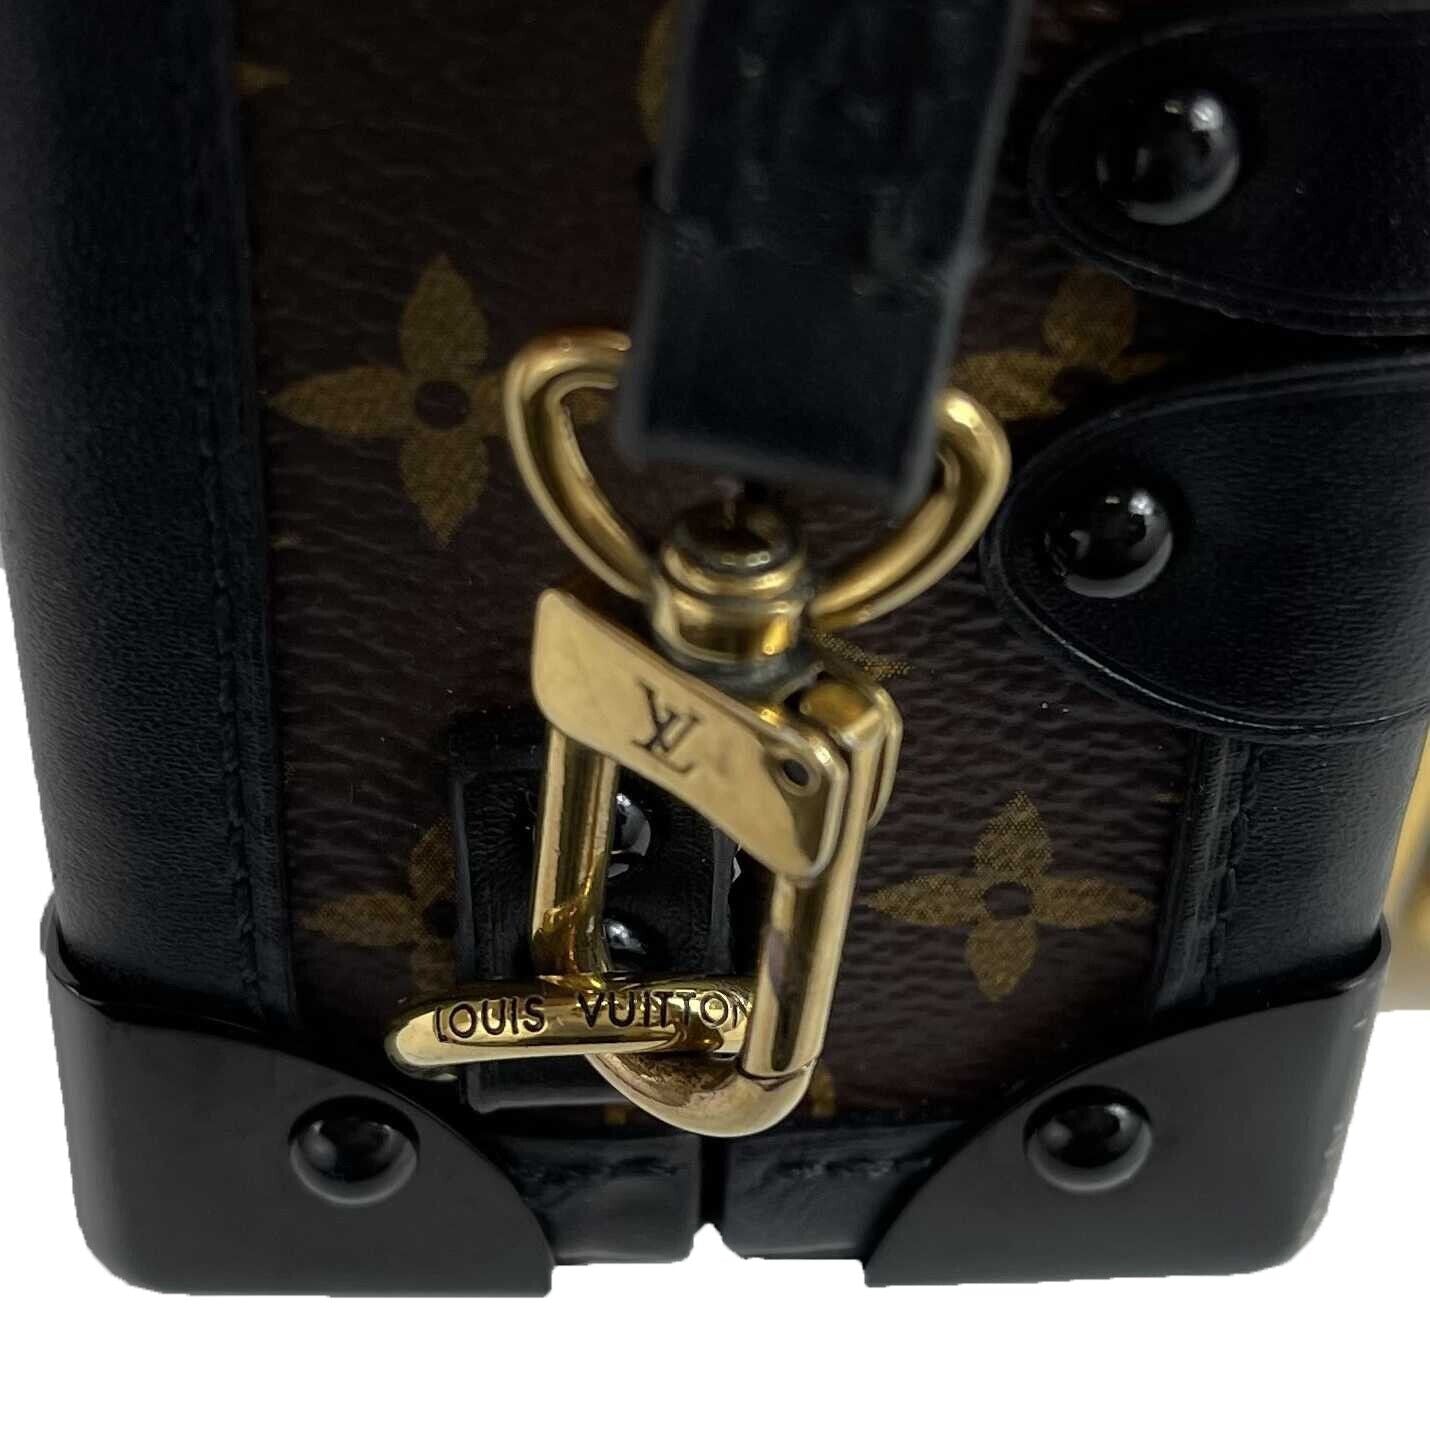 Louis Vuitton Monogram Canvas Petite Malle Shoulder Bag M45943